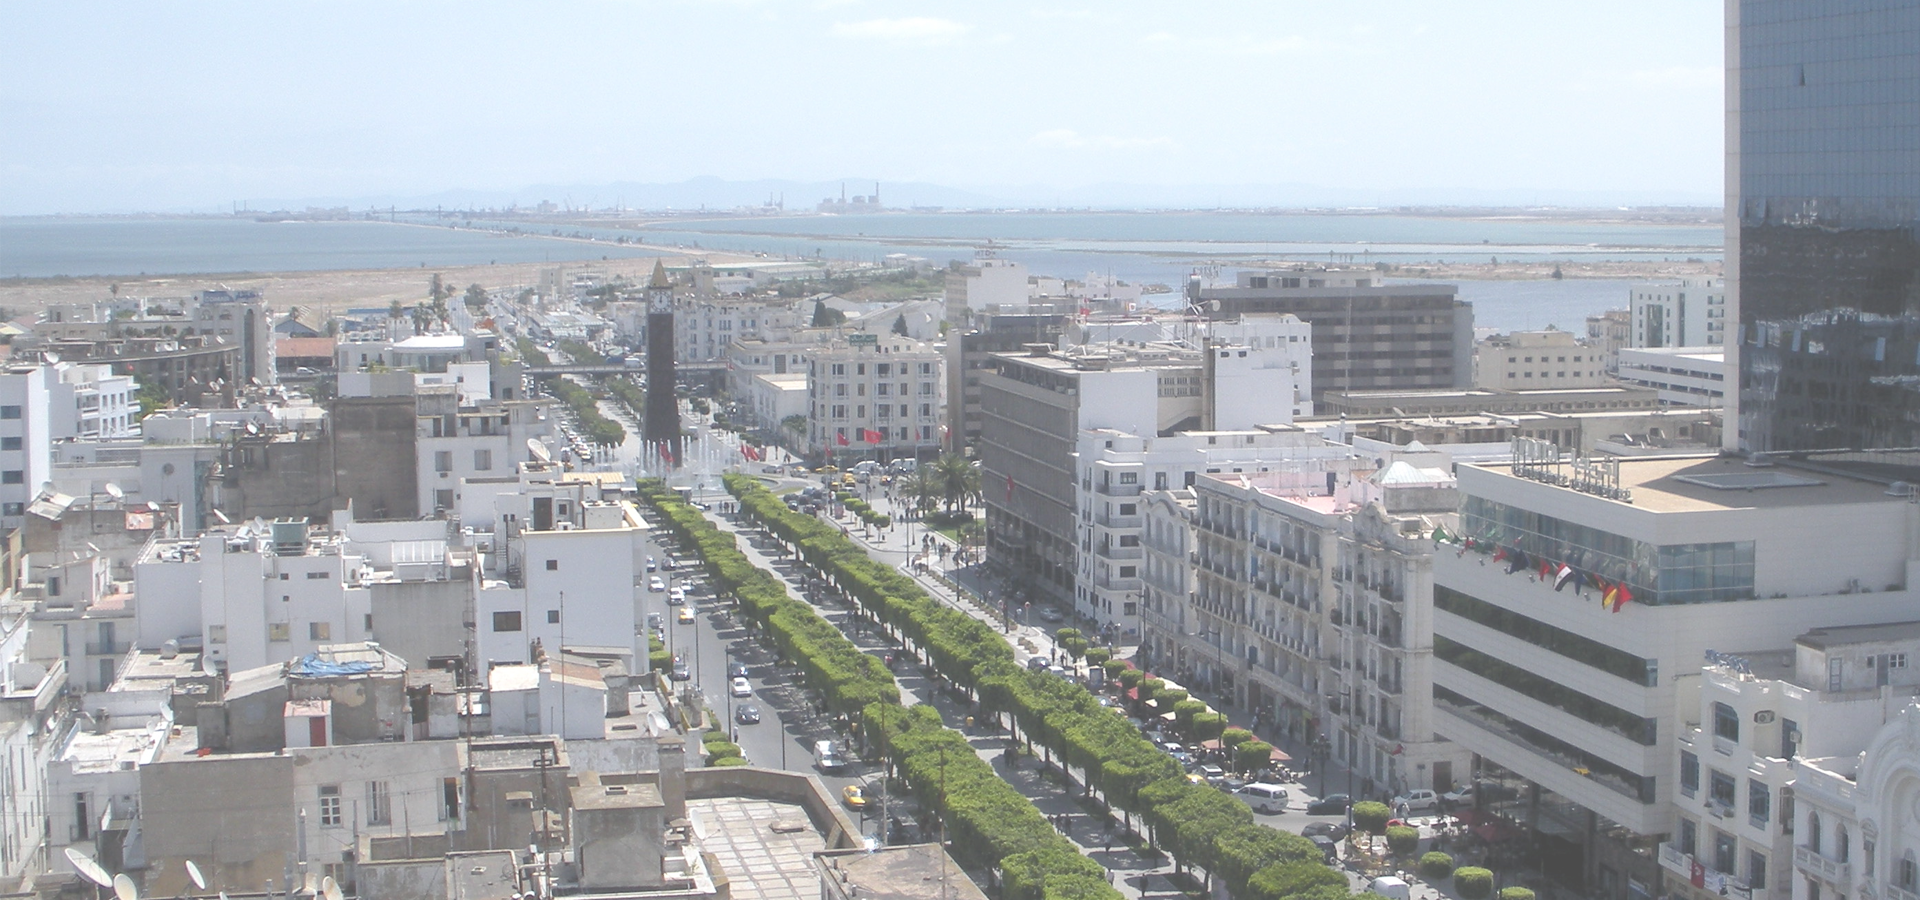 <b>Tunis, Tunisia</b>